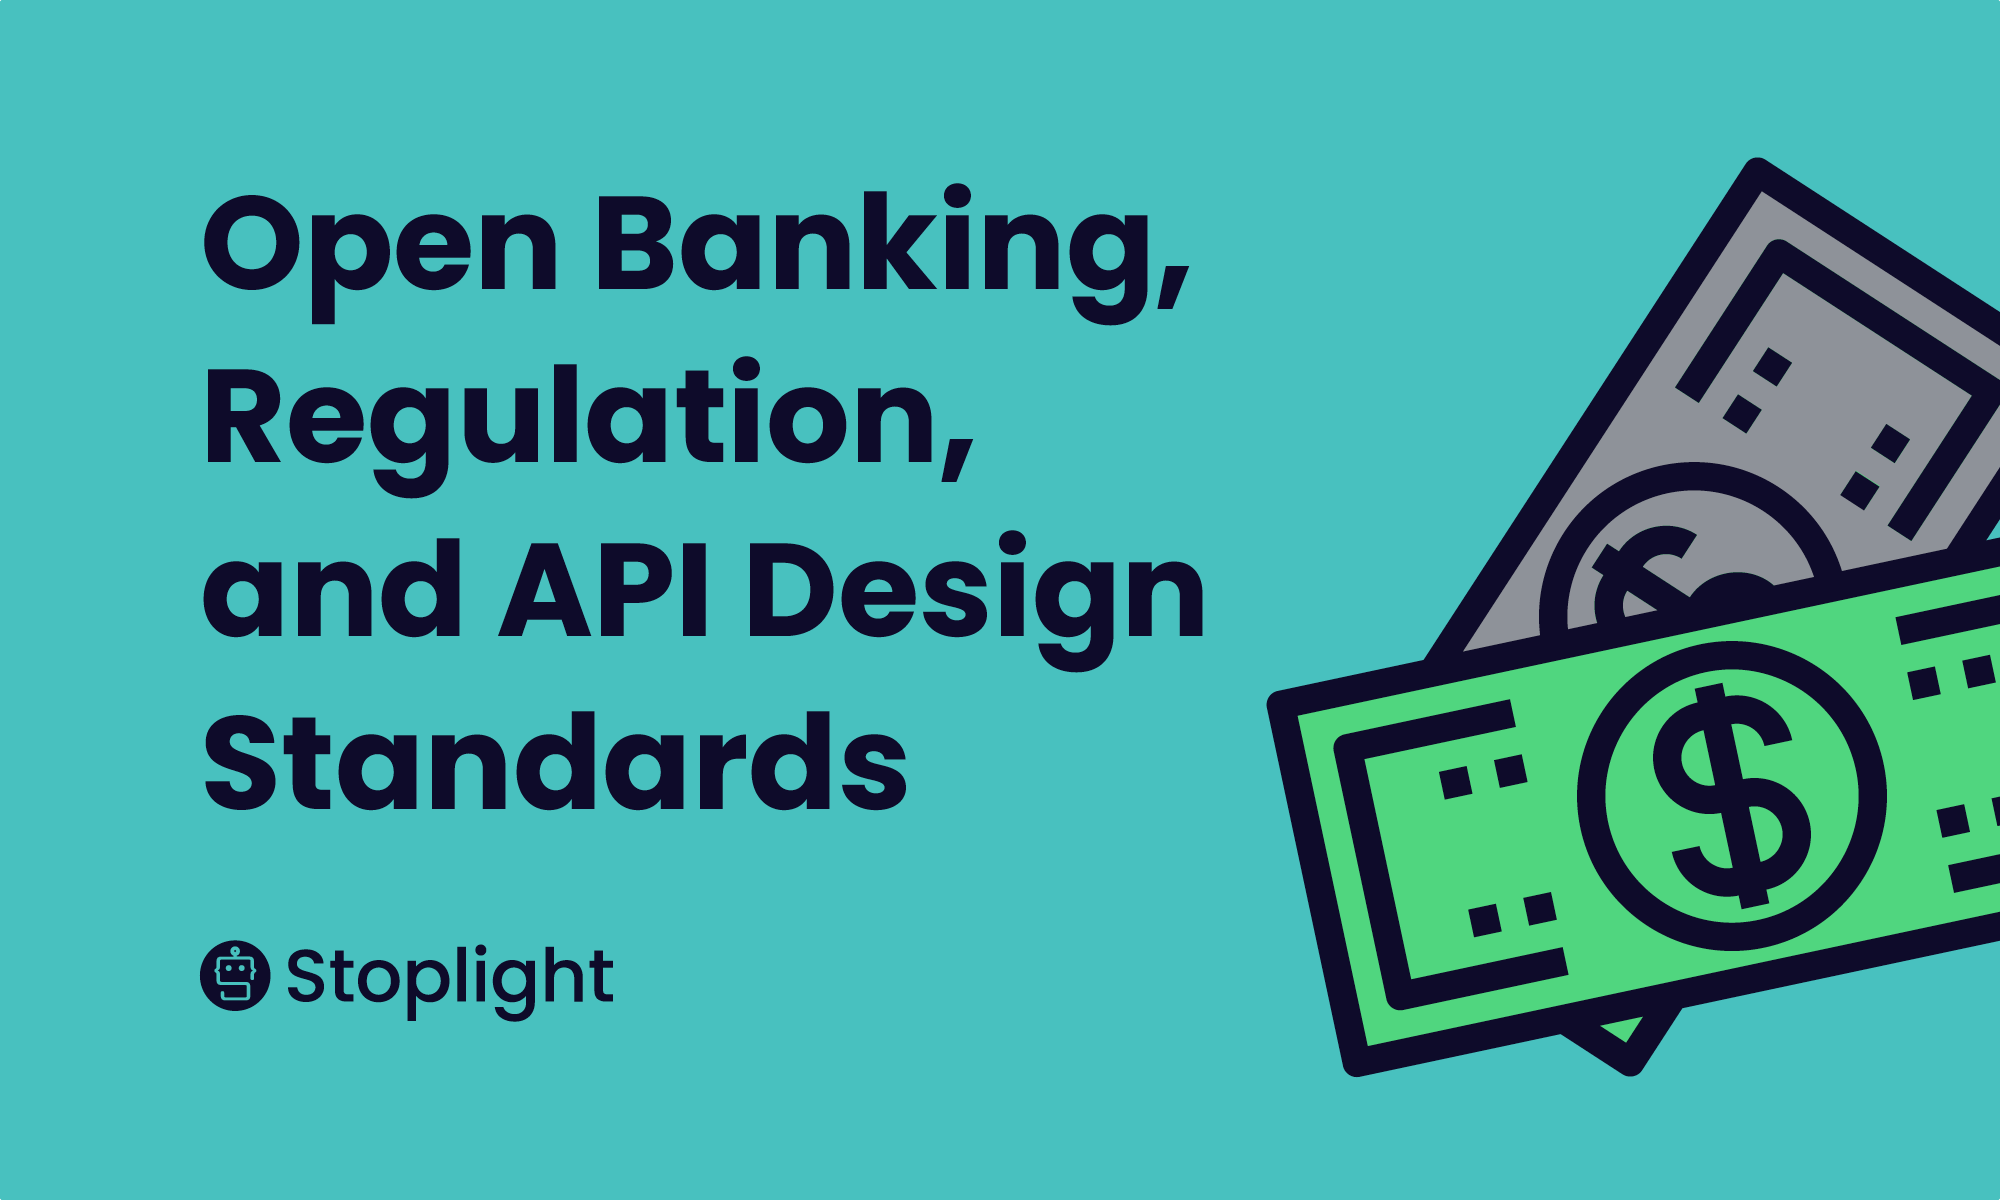 Open Banking, Regulation, and API Design Standards